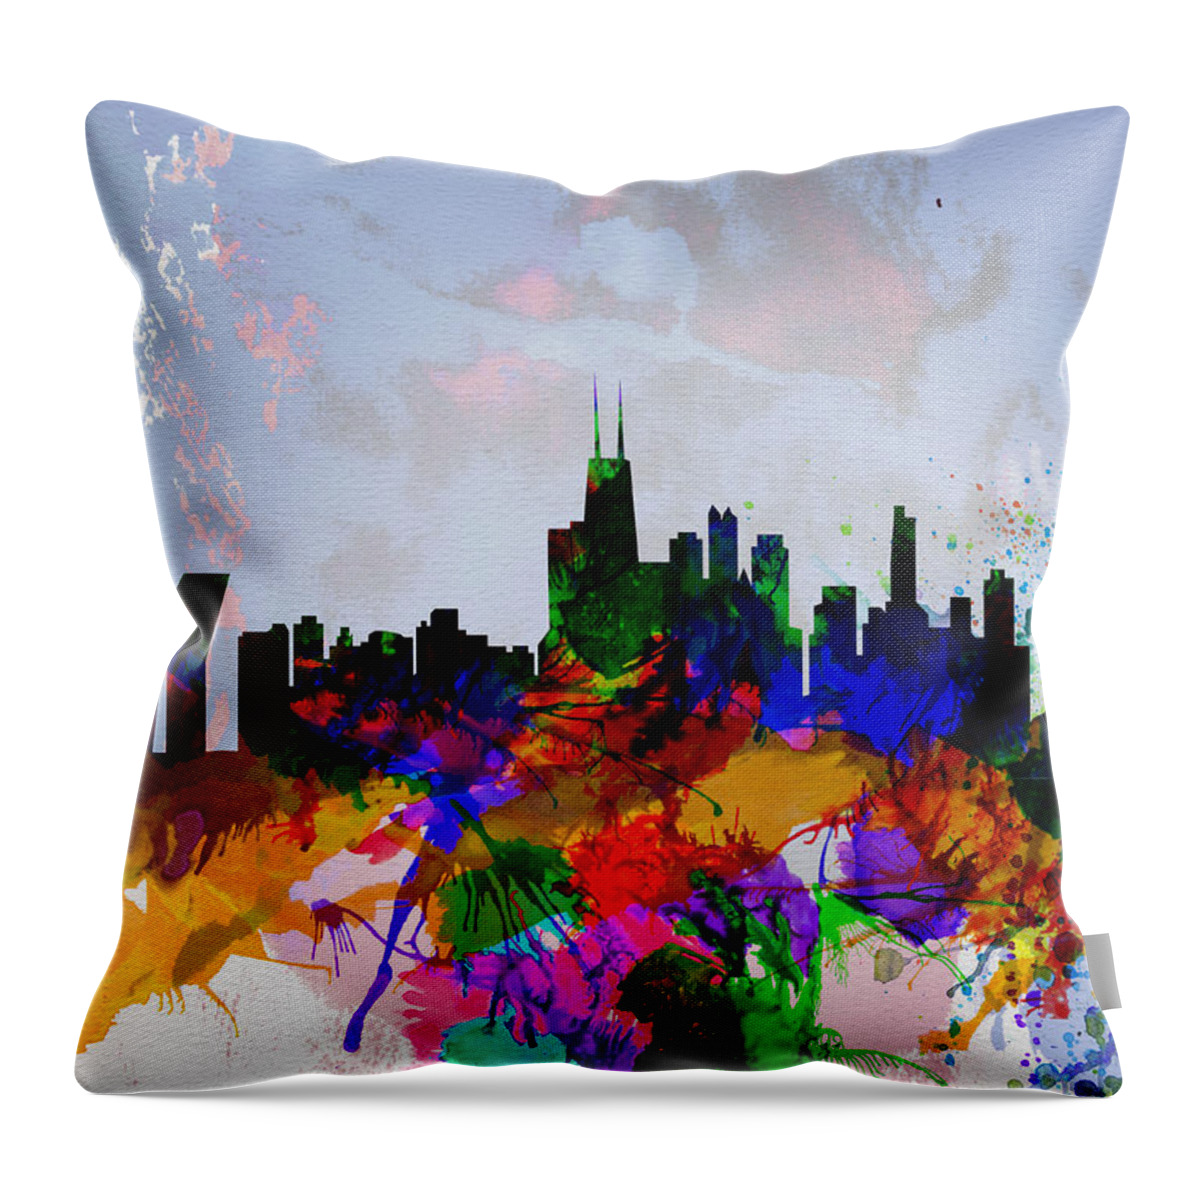 Copenhagen Throw Pillow featuring the painting Copenhagen Watercolor Skyline by Naxart Studio